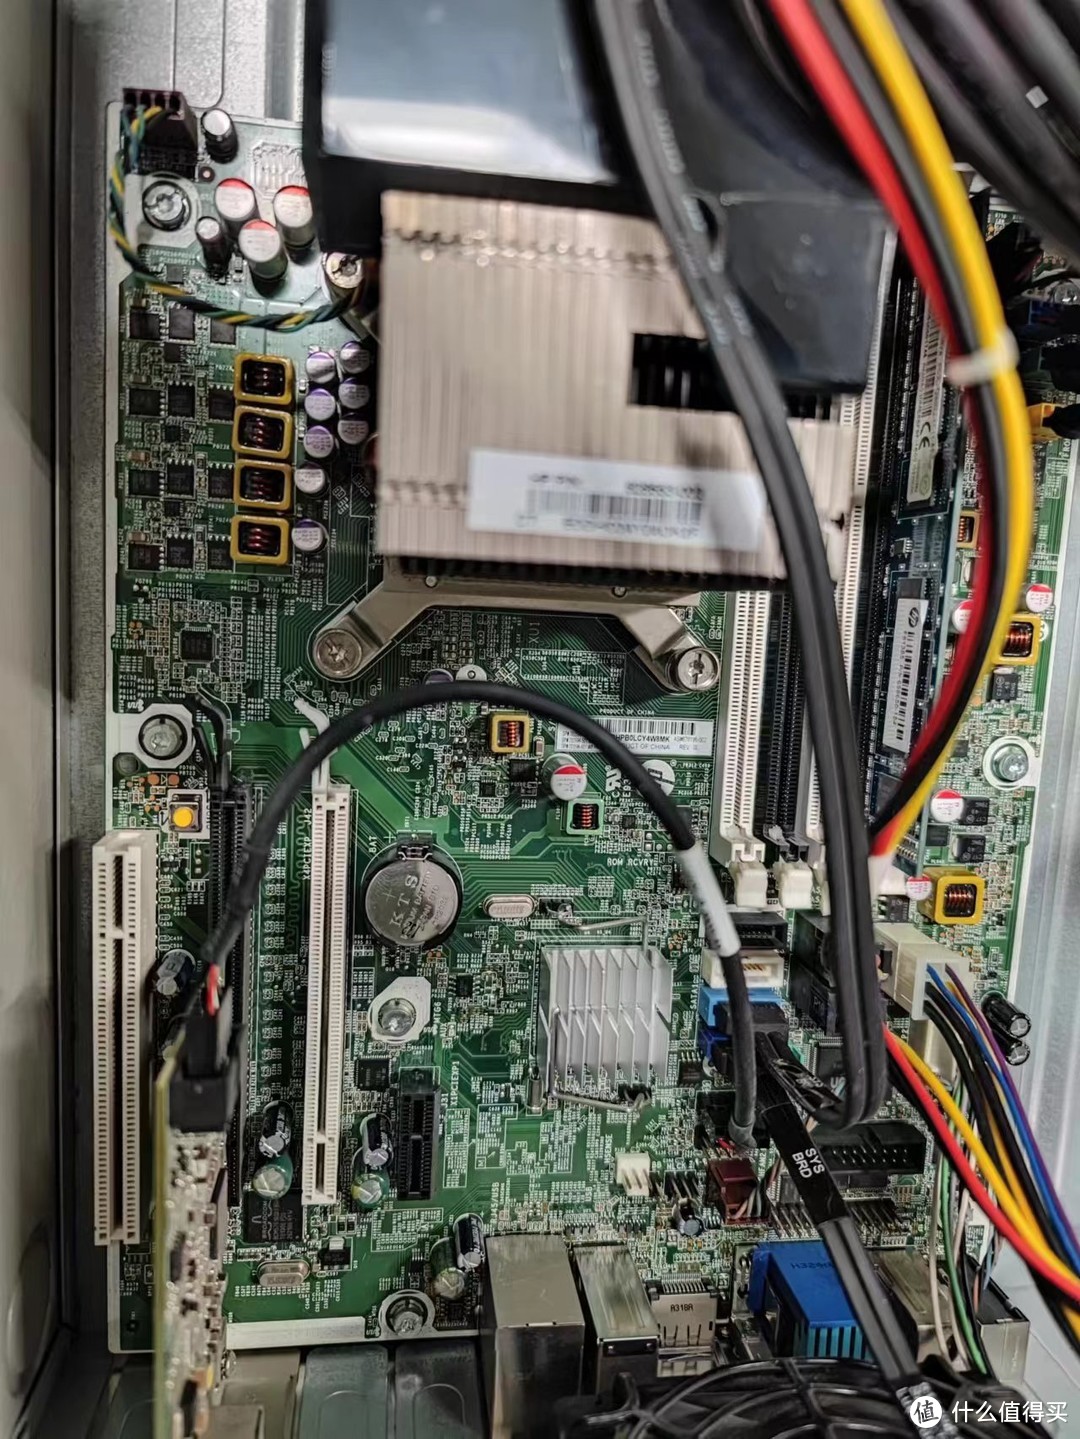 旧的电脑主板PCIE口非常丰富